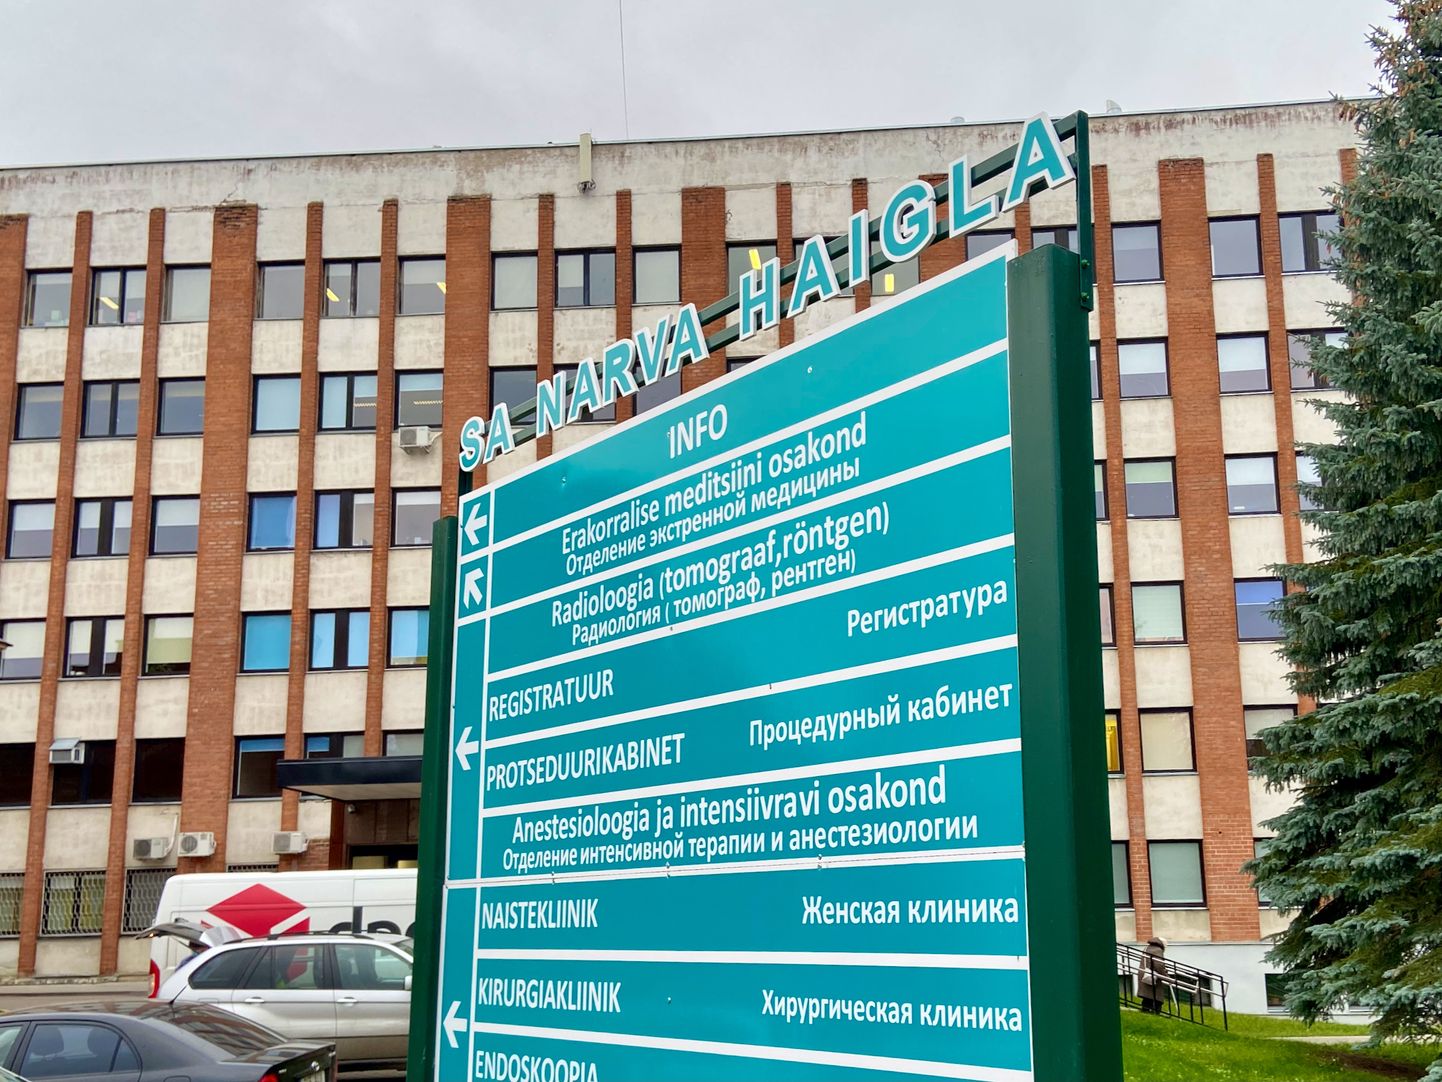 Плановые операции в Нарвской больнице приостановлены, поскольку большинство сотрудников хирургического отделения либо инфицированы, либо находятся в самоизоляции.